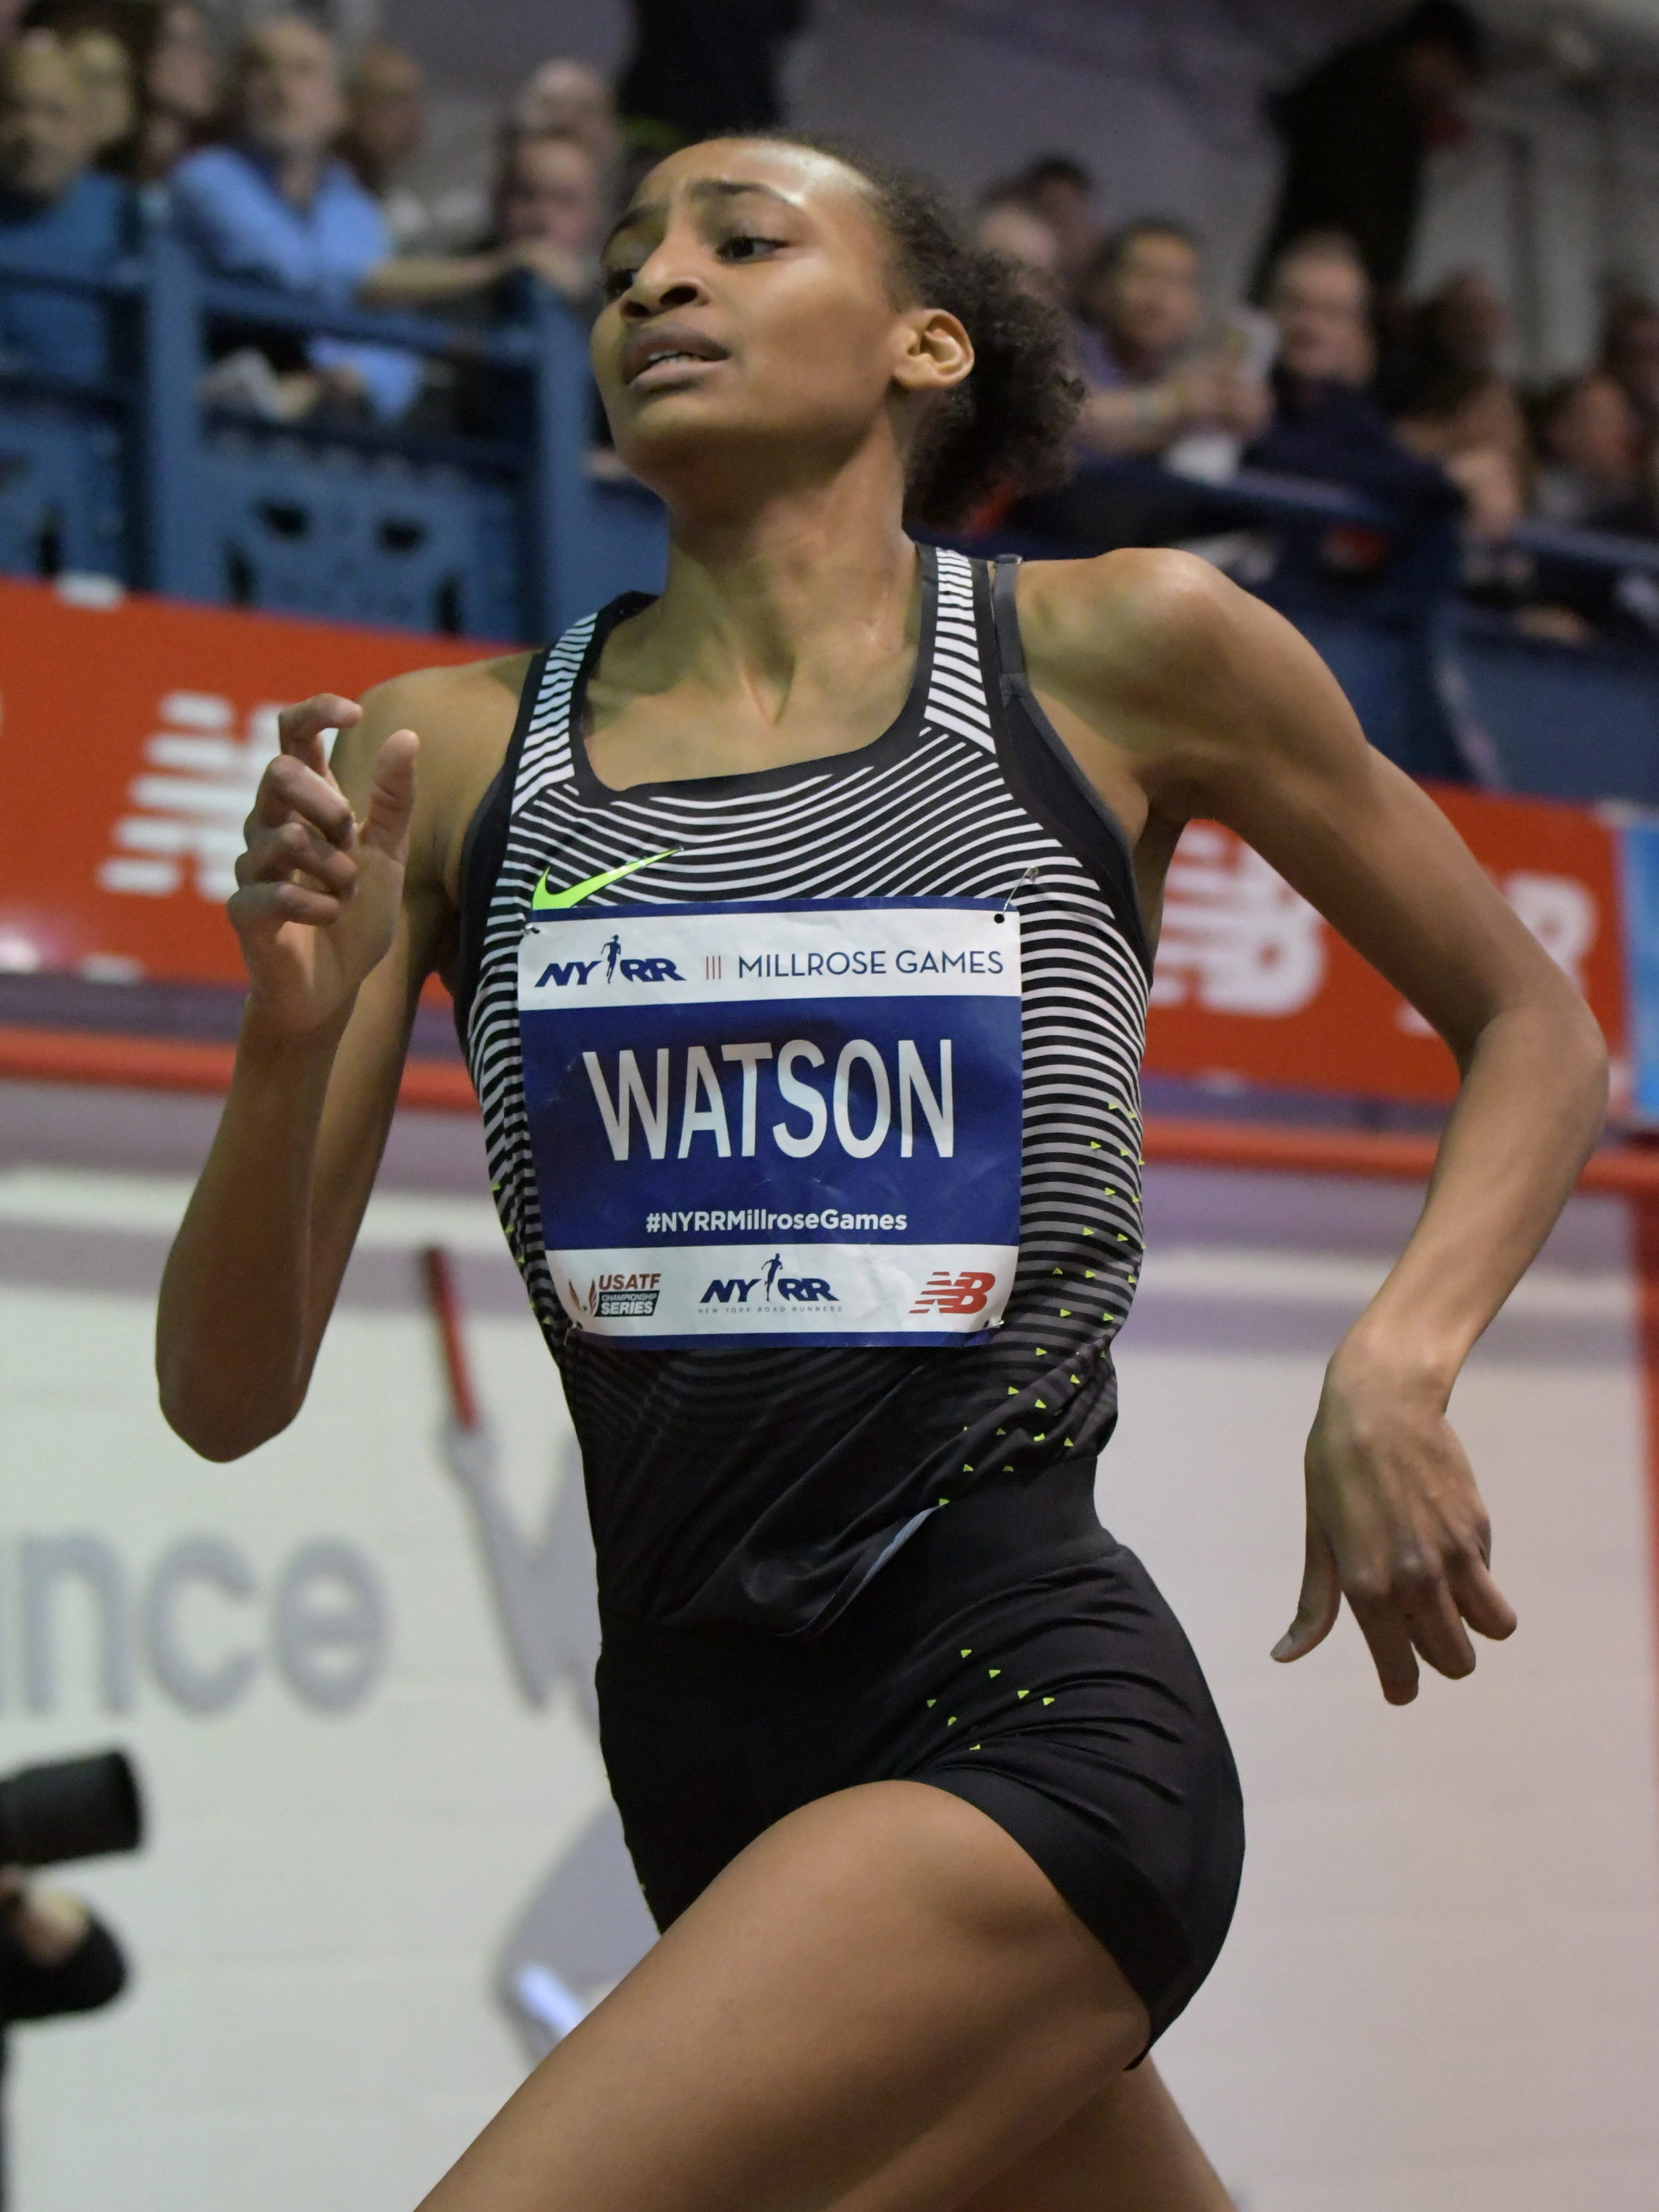 Turbine Geleidbaarheid Manie Sammy Watson sets U.S. girls record in 800 meters